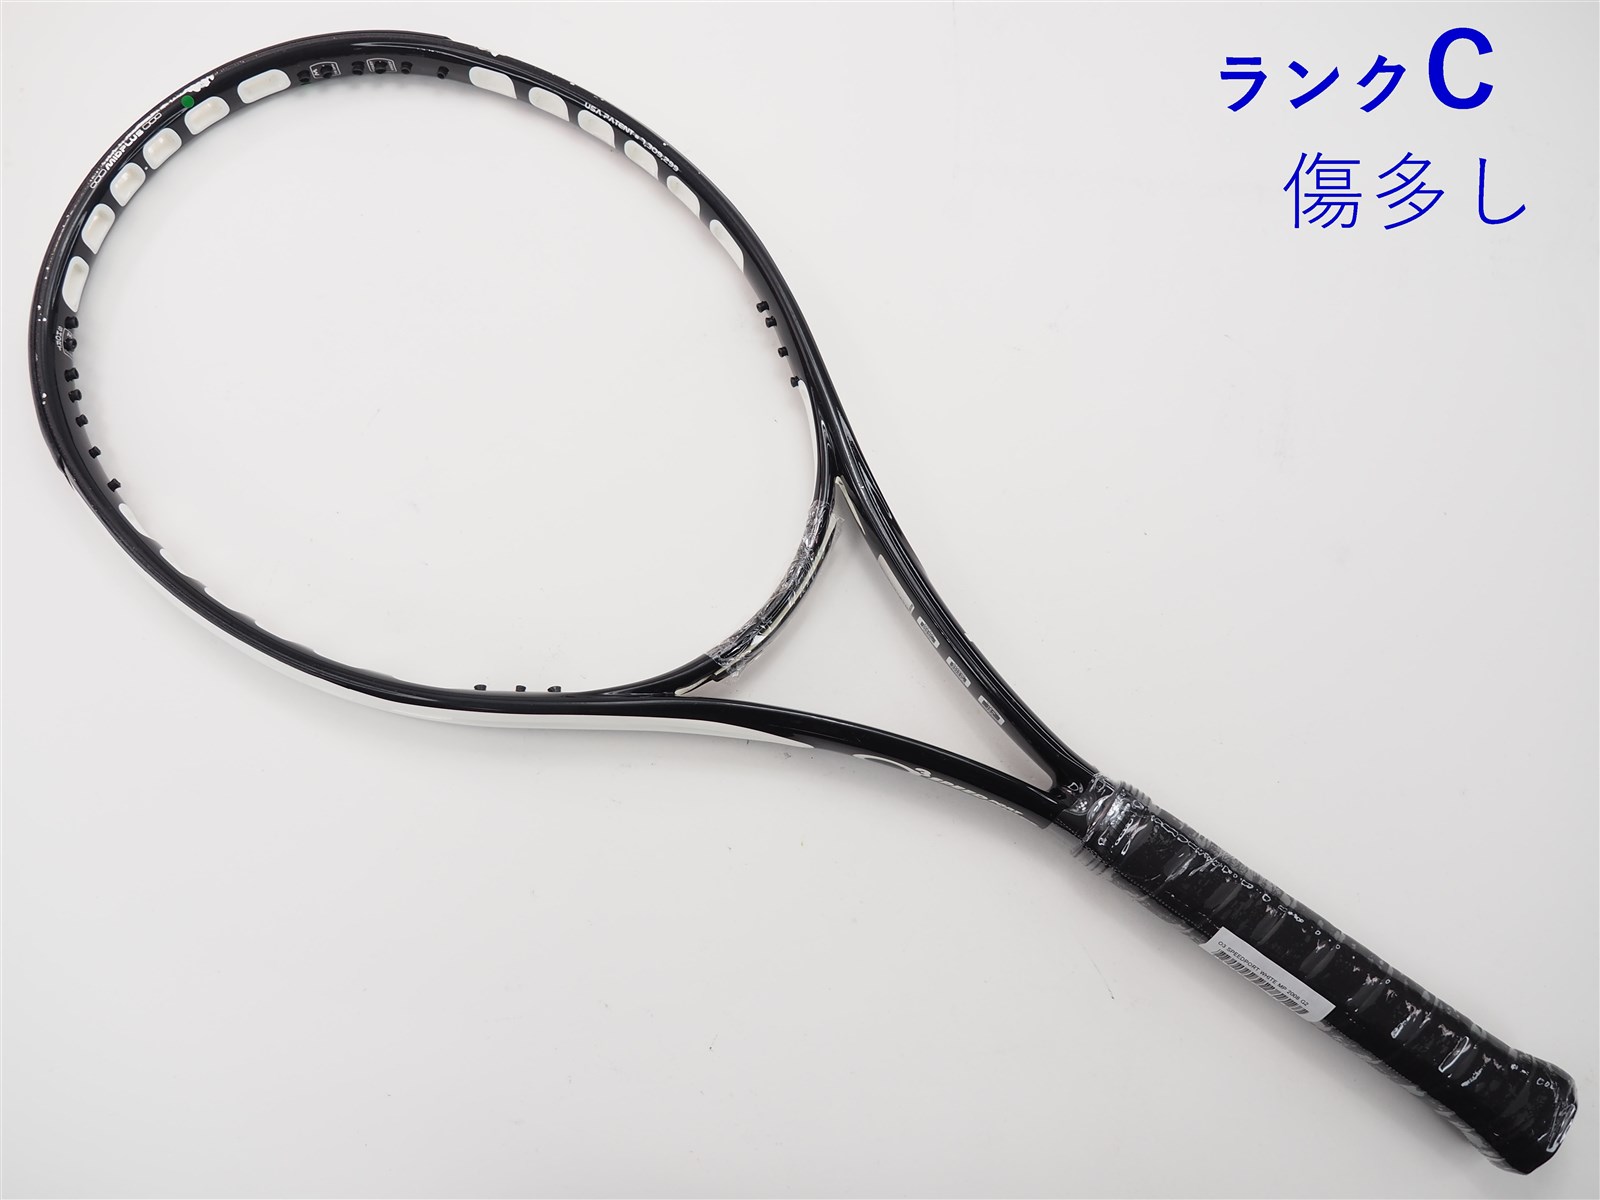 テニスラケット プリンス オースリー ホワイト MP (G3)PRINCE O3 WHITE MP